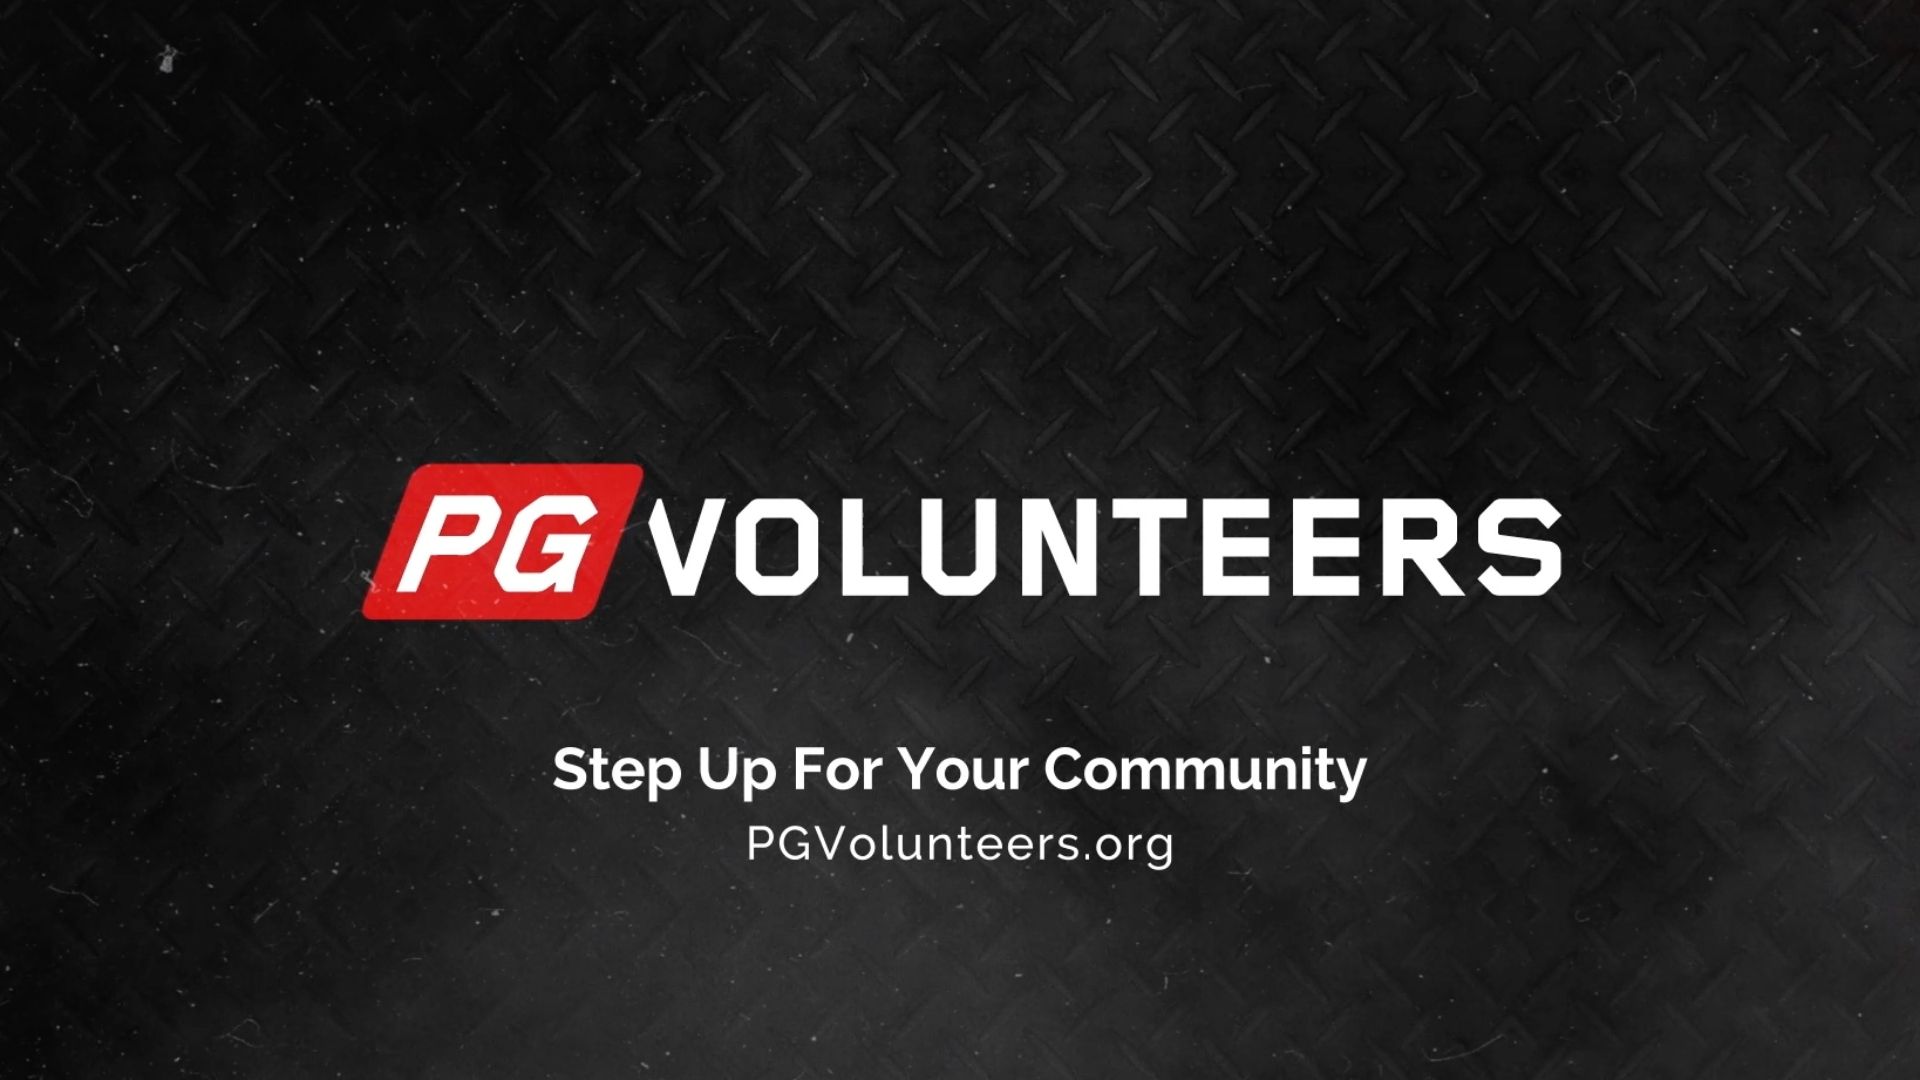 PG Volunteers